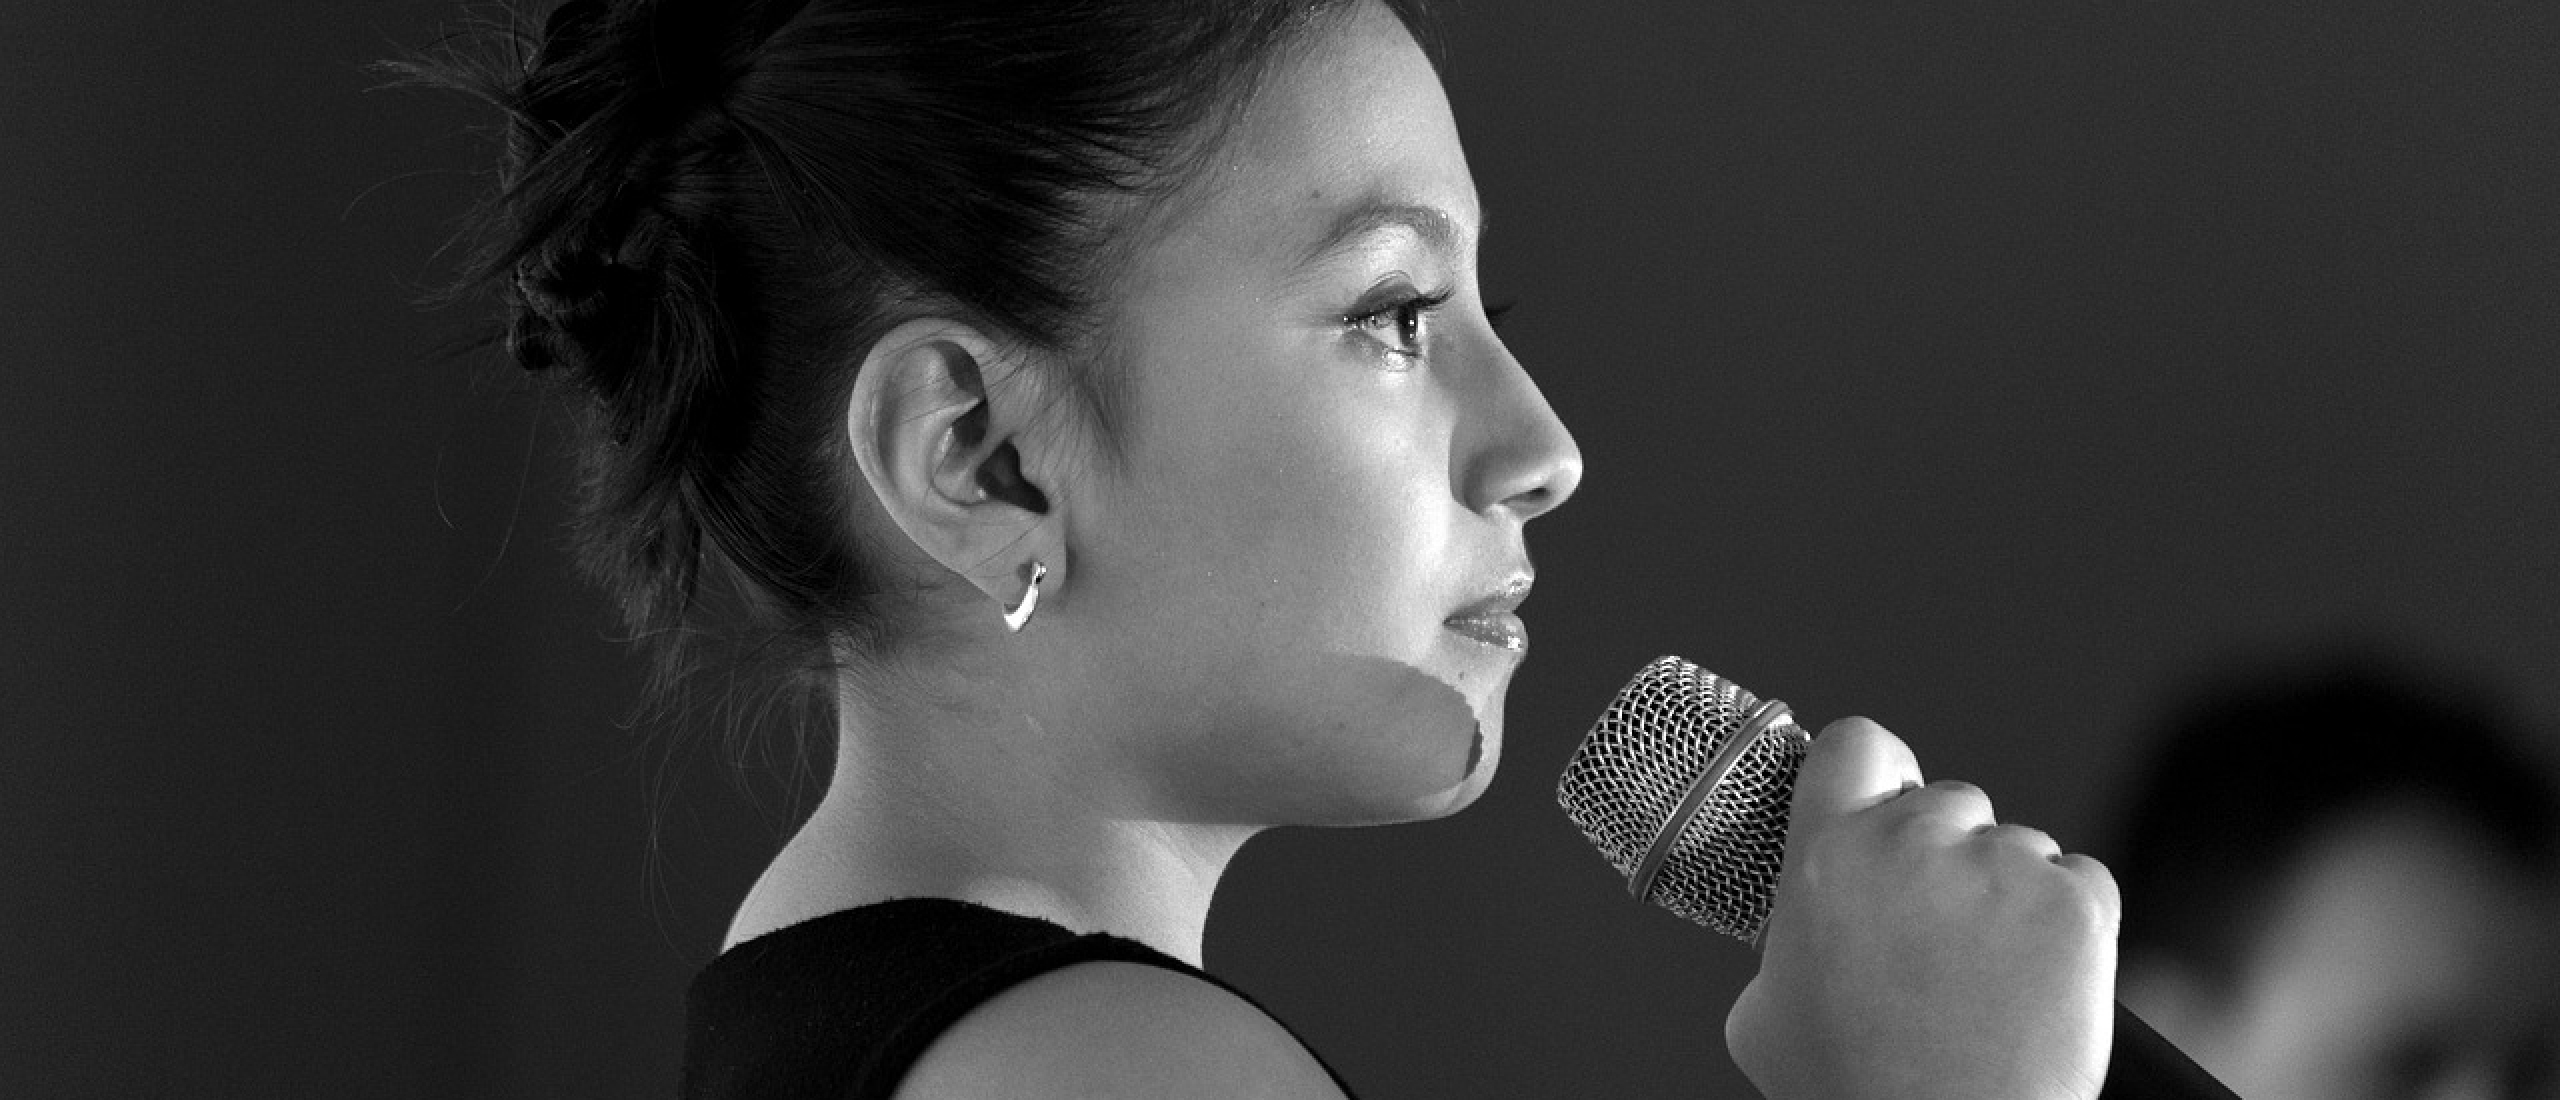 Hoeveel zanglessen zijn nodig om goed te zingen?